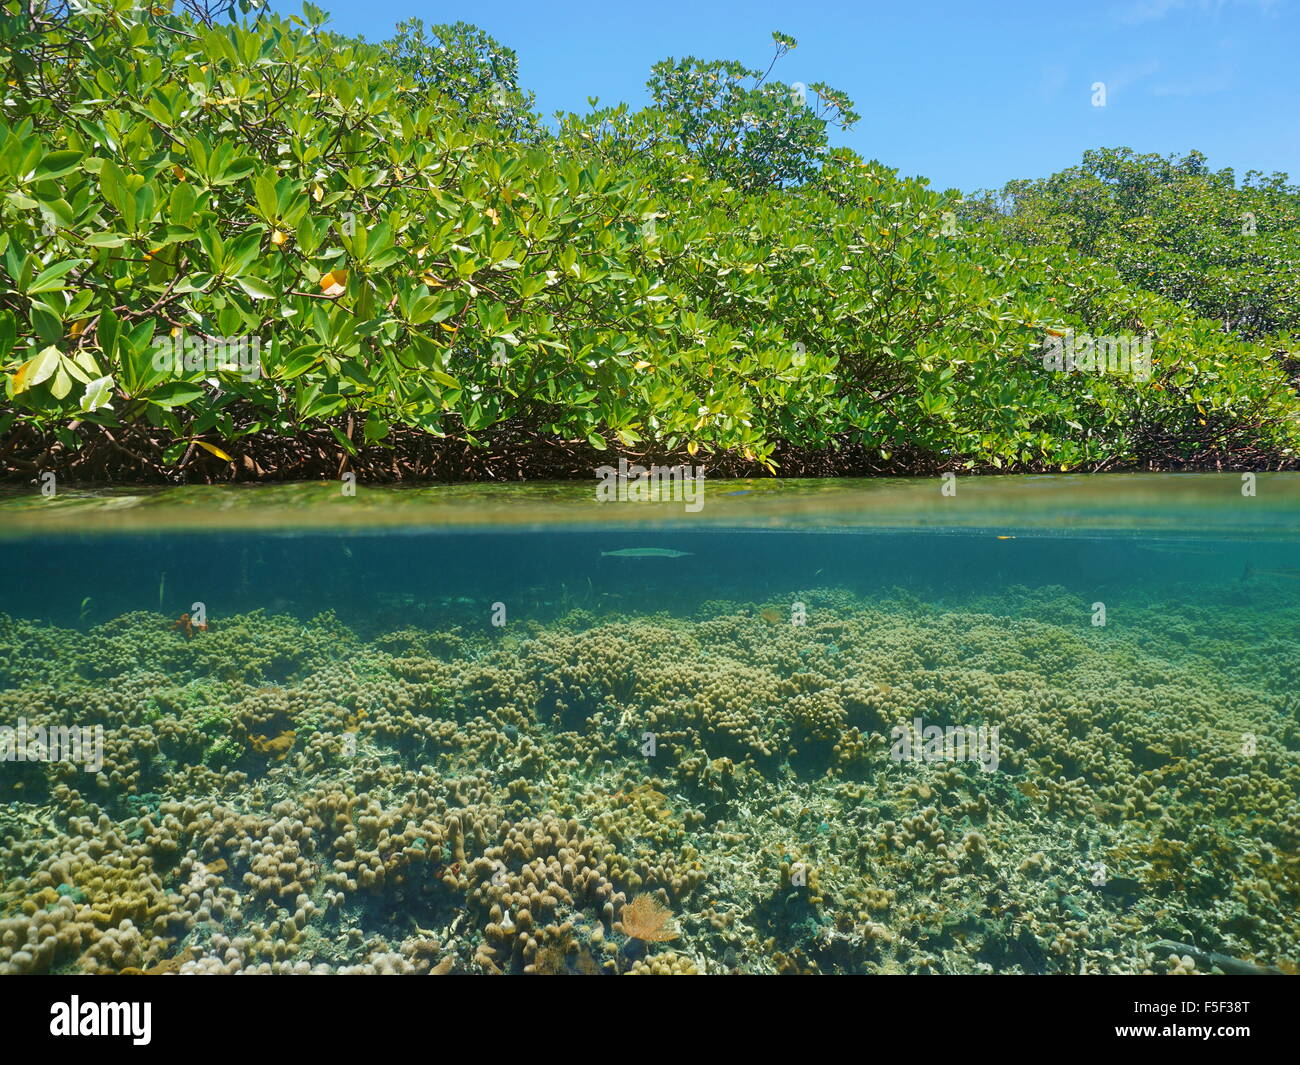 Au-dessus et au-dessous de la surface de la mer près de mangroves avec un récif peu profond sous l'eau, Caraïbes, Panama, Amérique Centrale Banque D'Images